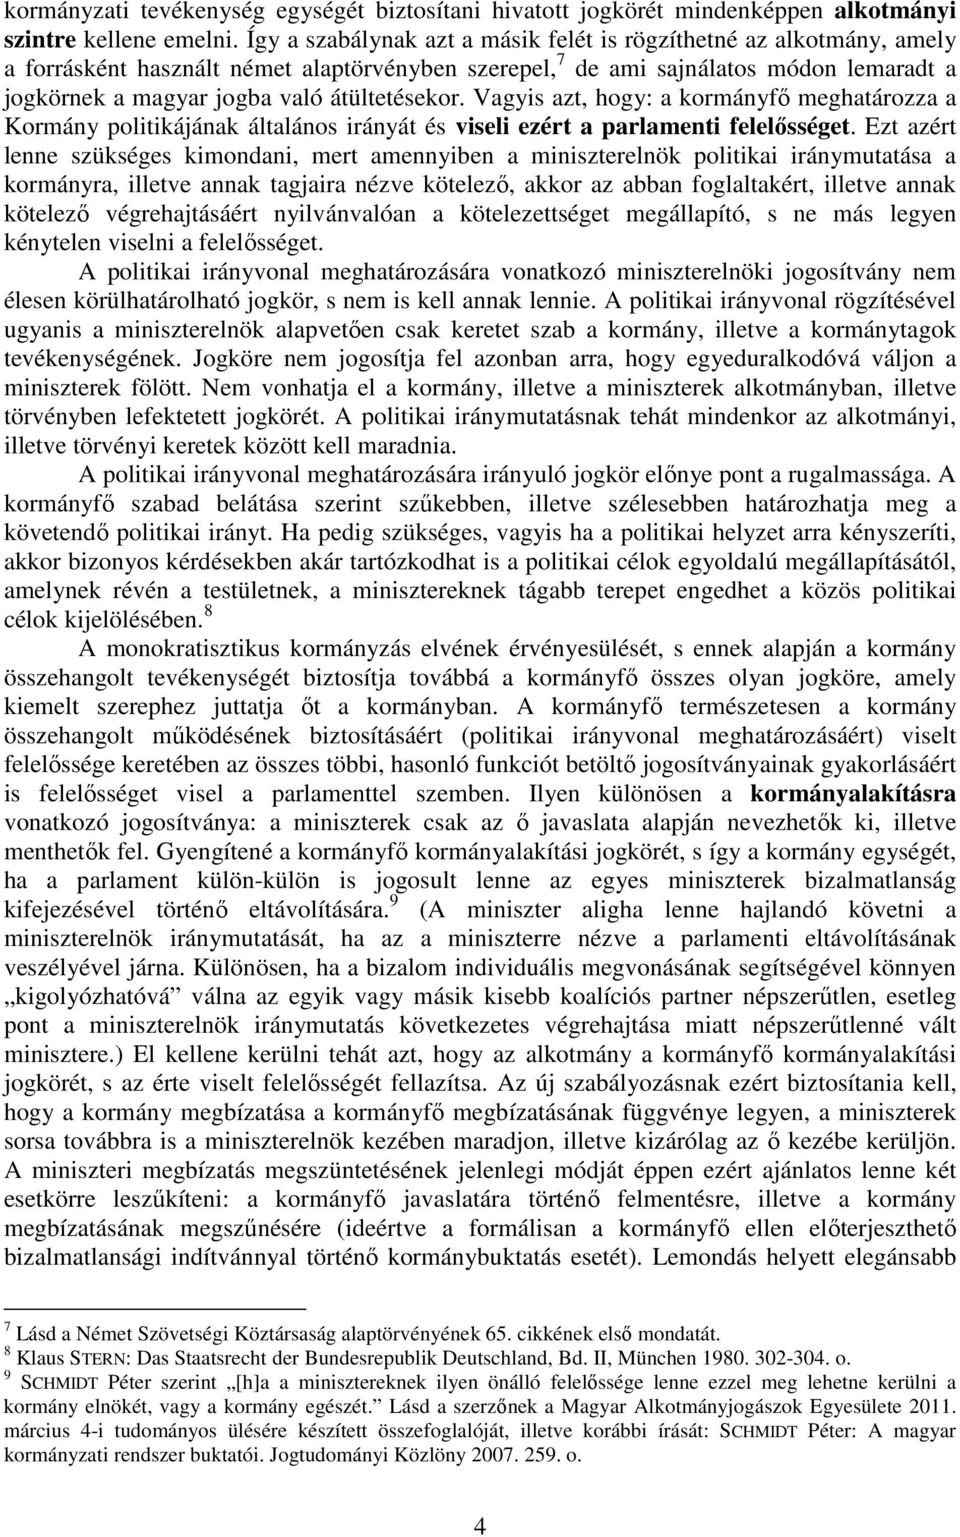 átültetésekor. Vagyis azt, hogy: a kormányfő meghatározza a Kormány politikájának általános irányát és viseli ezért a parlamenti felelősséget.